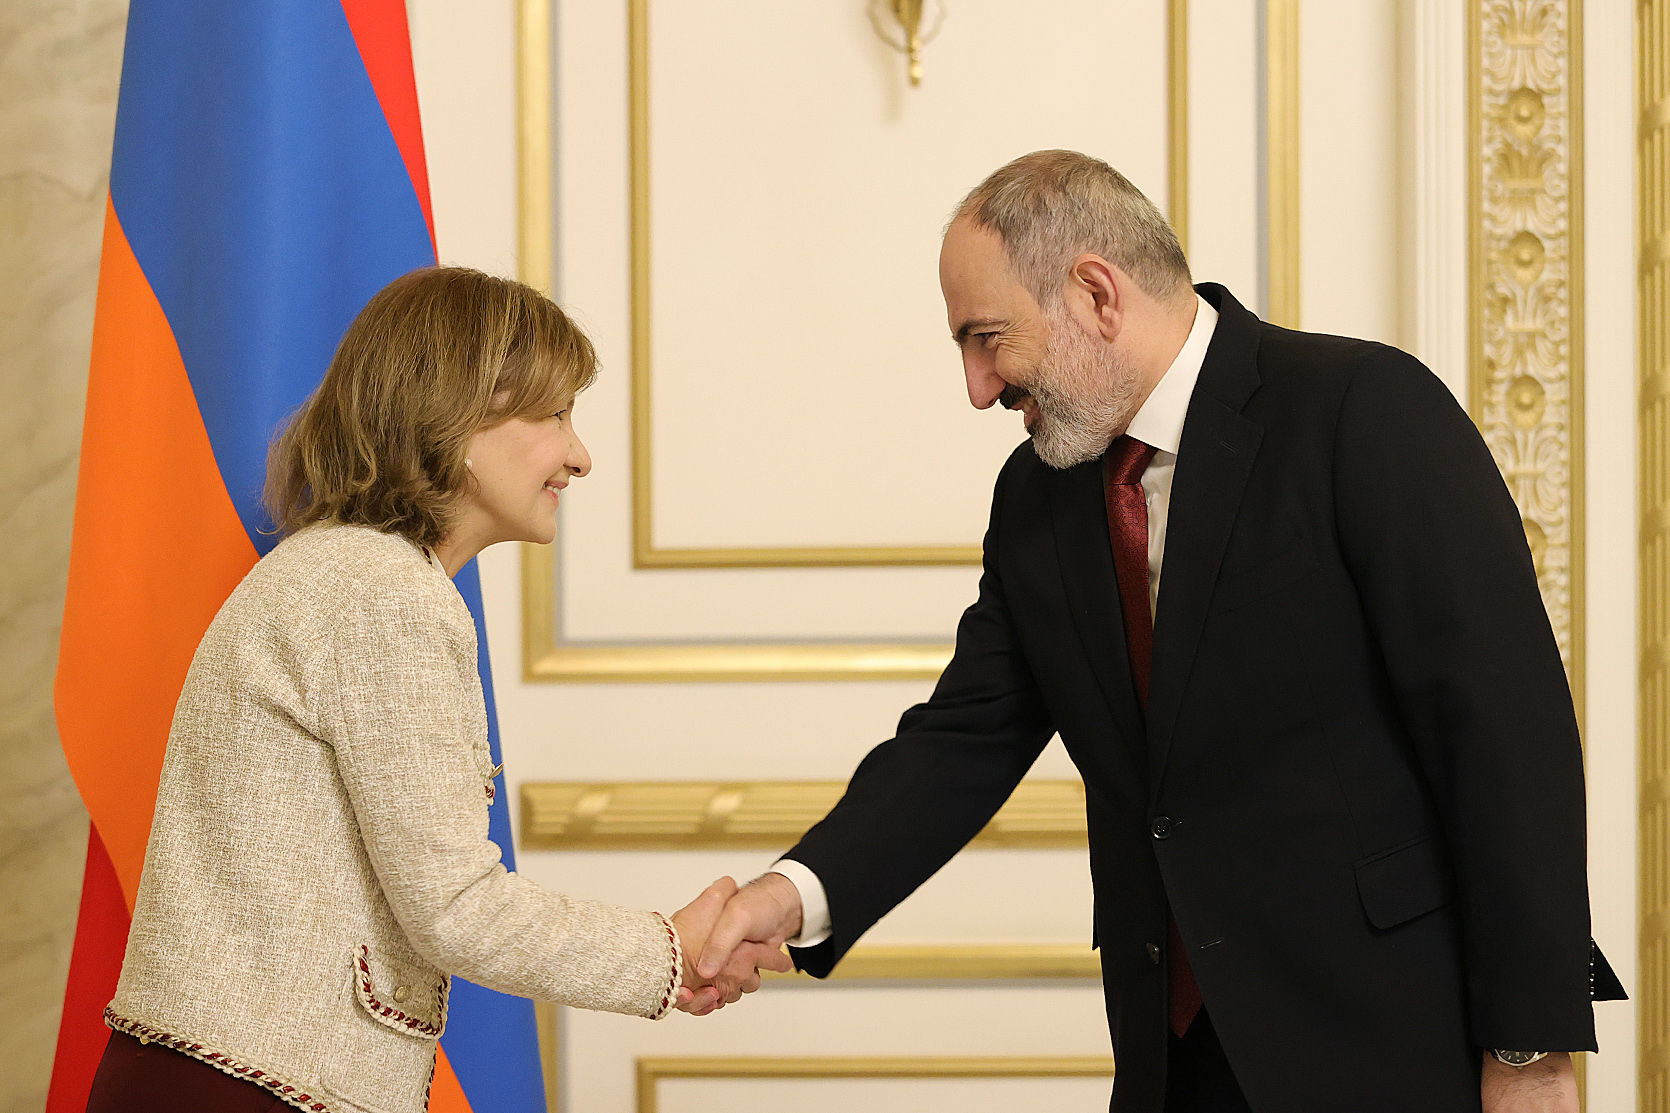 Шаги правительства Армении в сфере укрепления демократии достойны высокой оценки - Рибейро